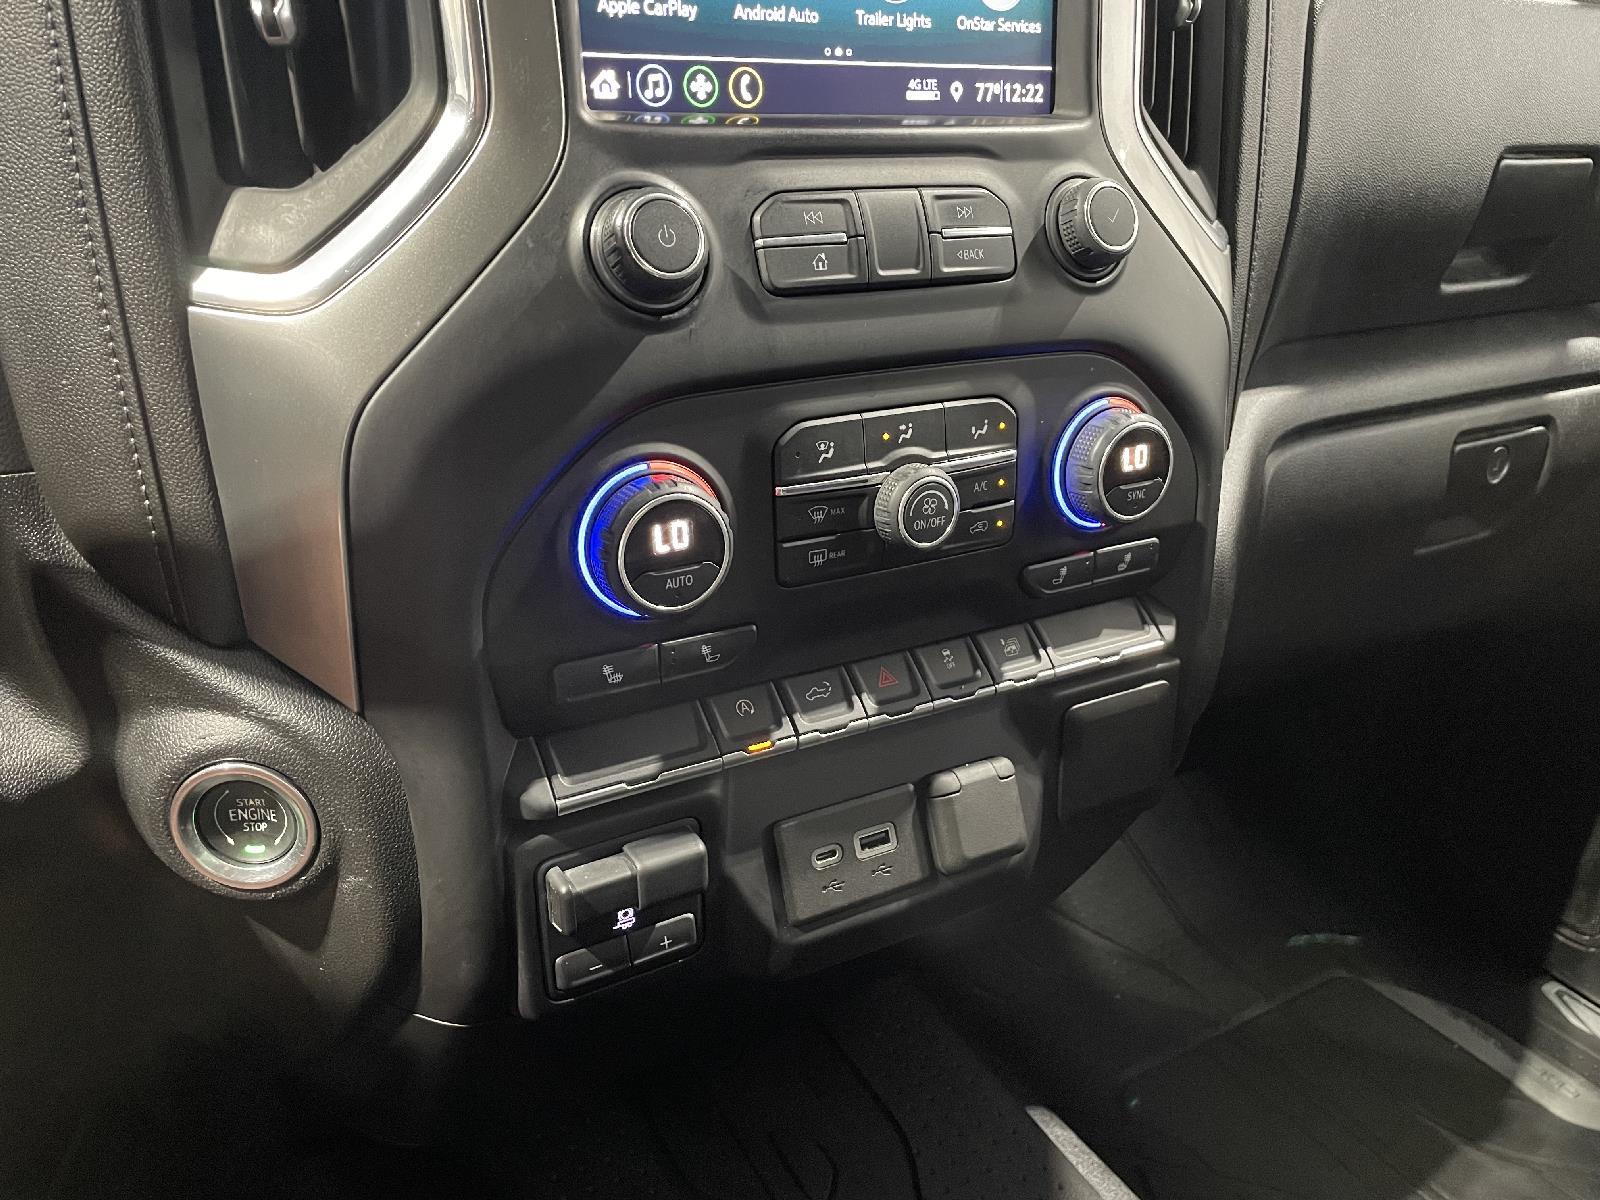 Used 2019 Chevrolet Silverado 1500 LT Crew Cab Truck for sale in St Joseph MO